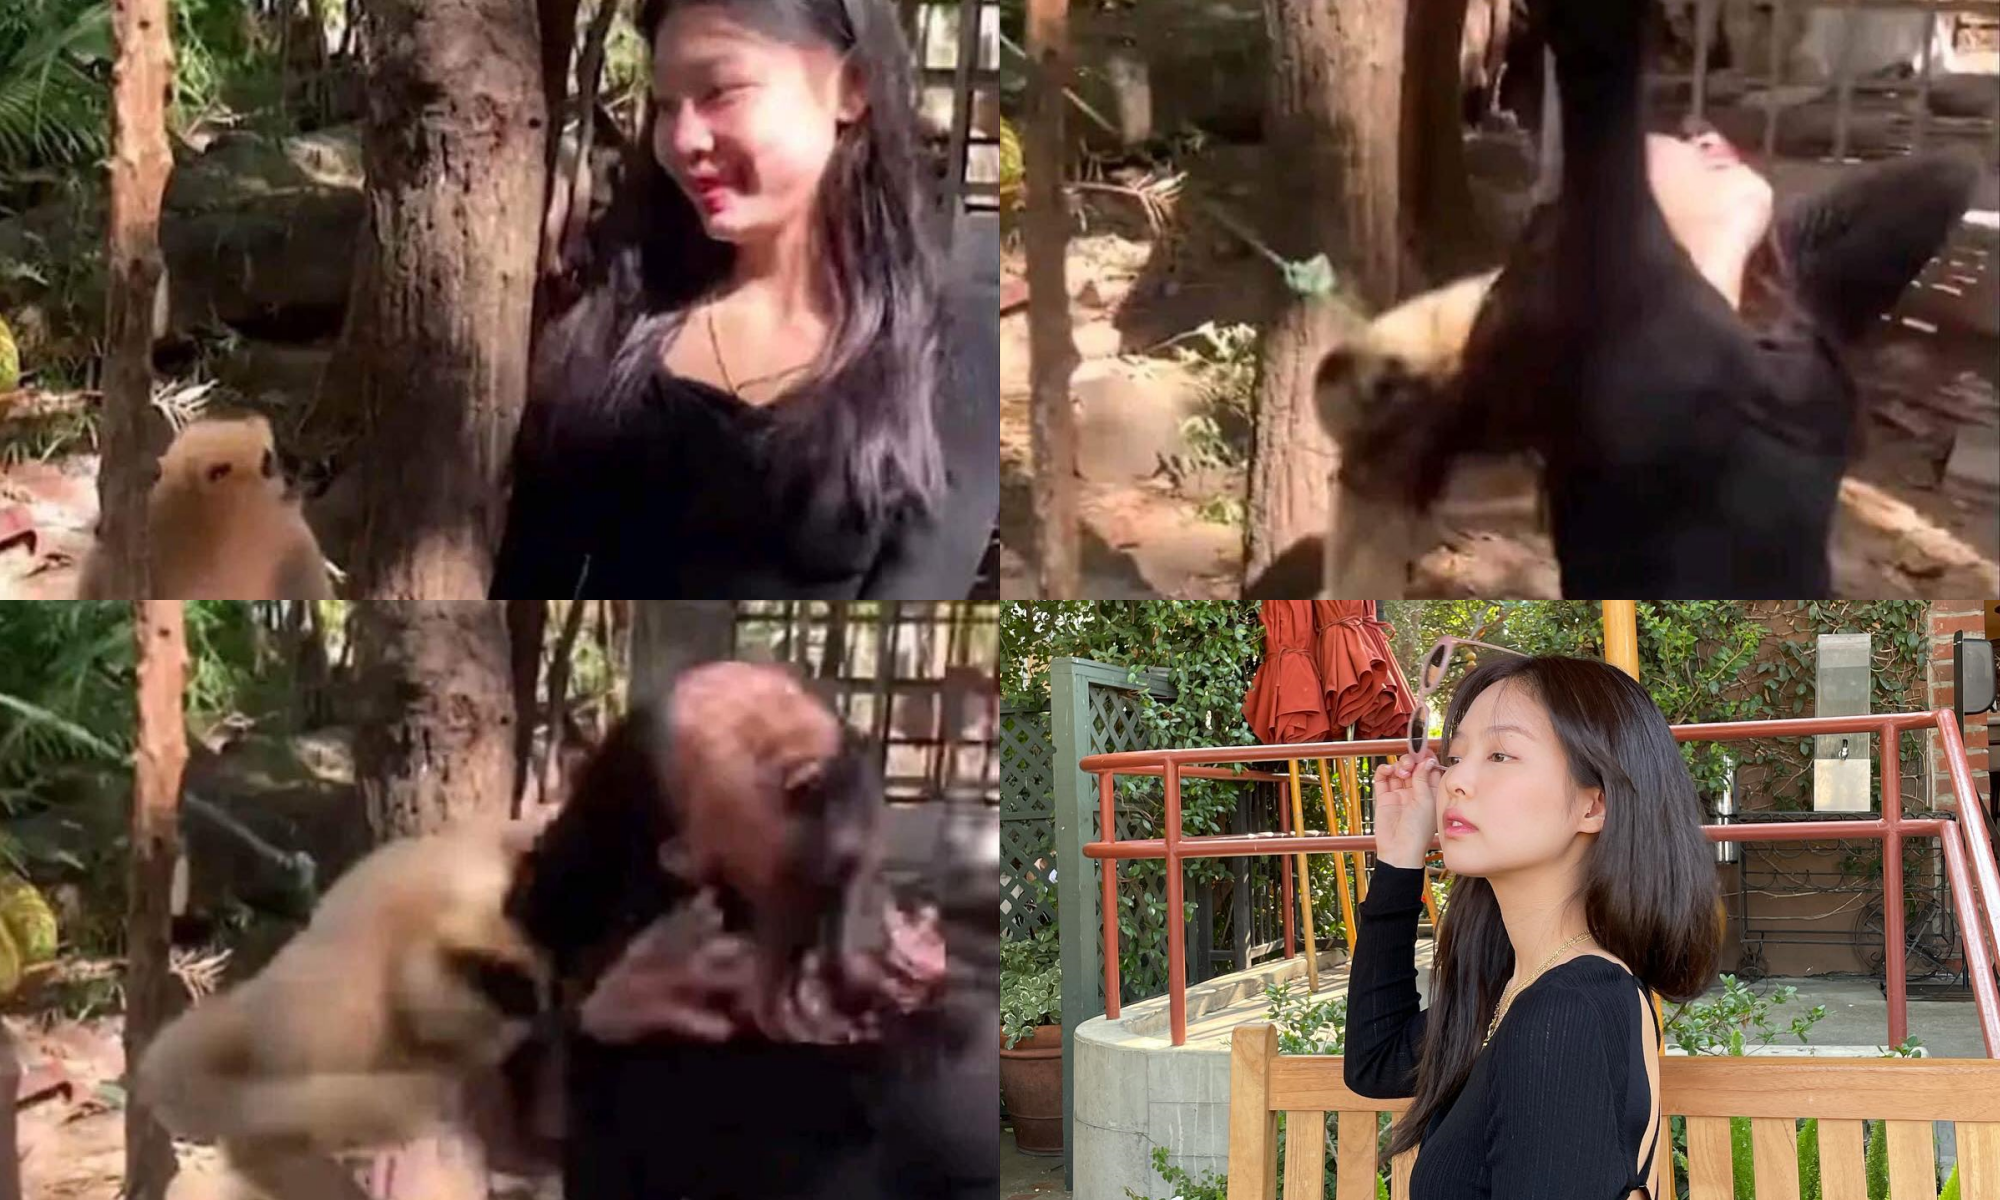 Hot rần rần ảnh Jennie (BLACKPINK) đi sở thú rồi bị khỉ... giật tóc, nhìn kĩ thấy hình như có gì sai sai - Ảnh 1.